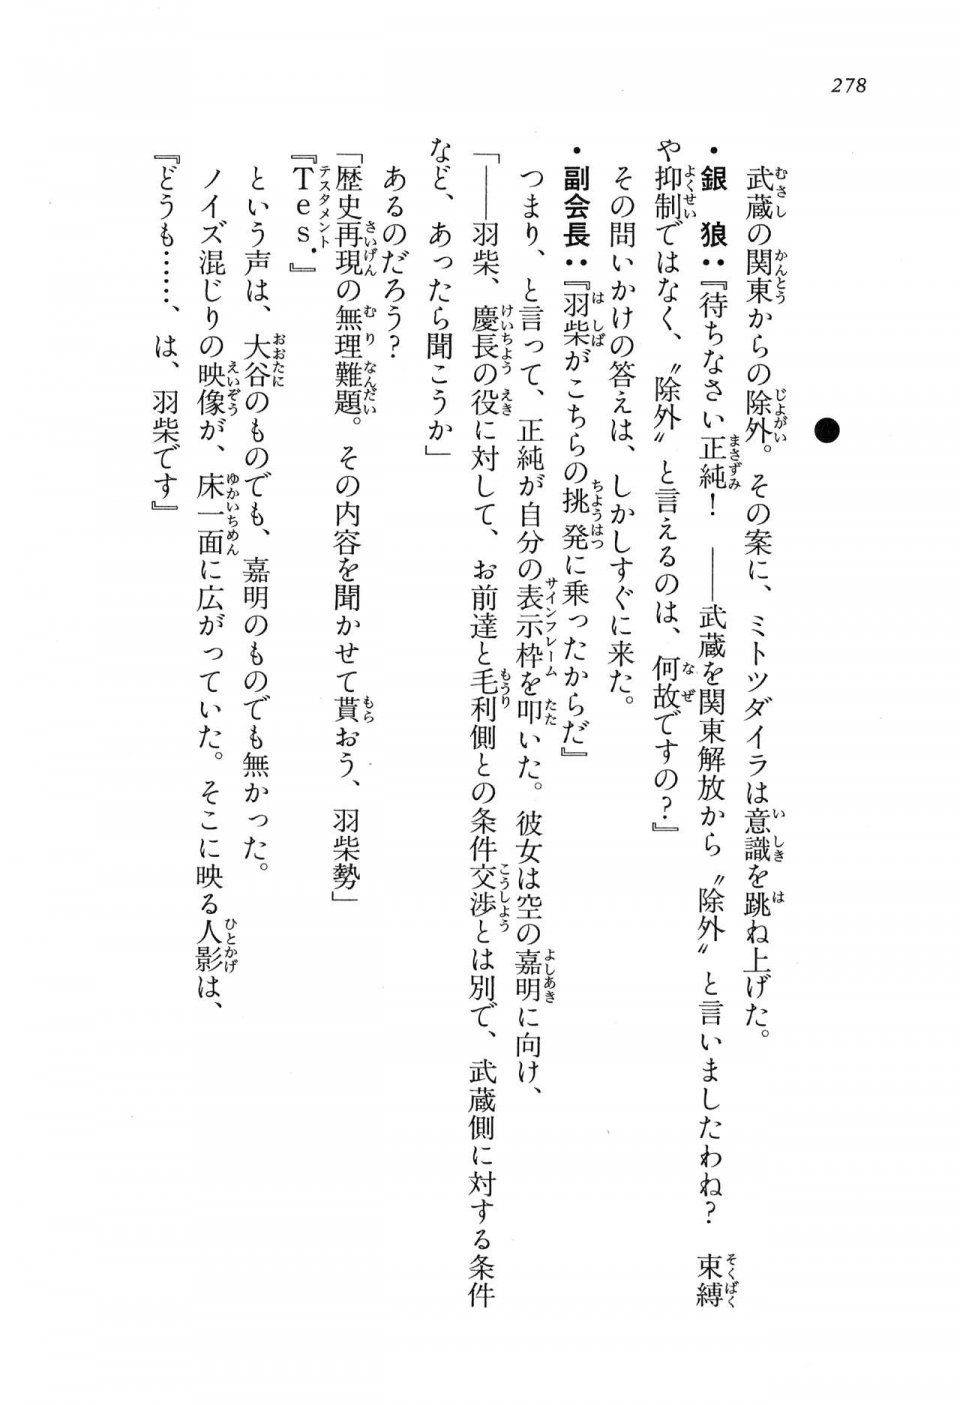 Kyoukai Senjou no Horizon LN Vol 16(7A) - Photo #278